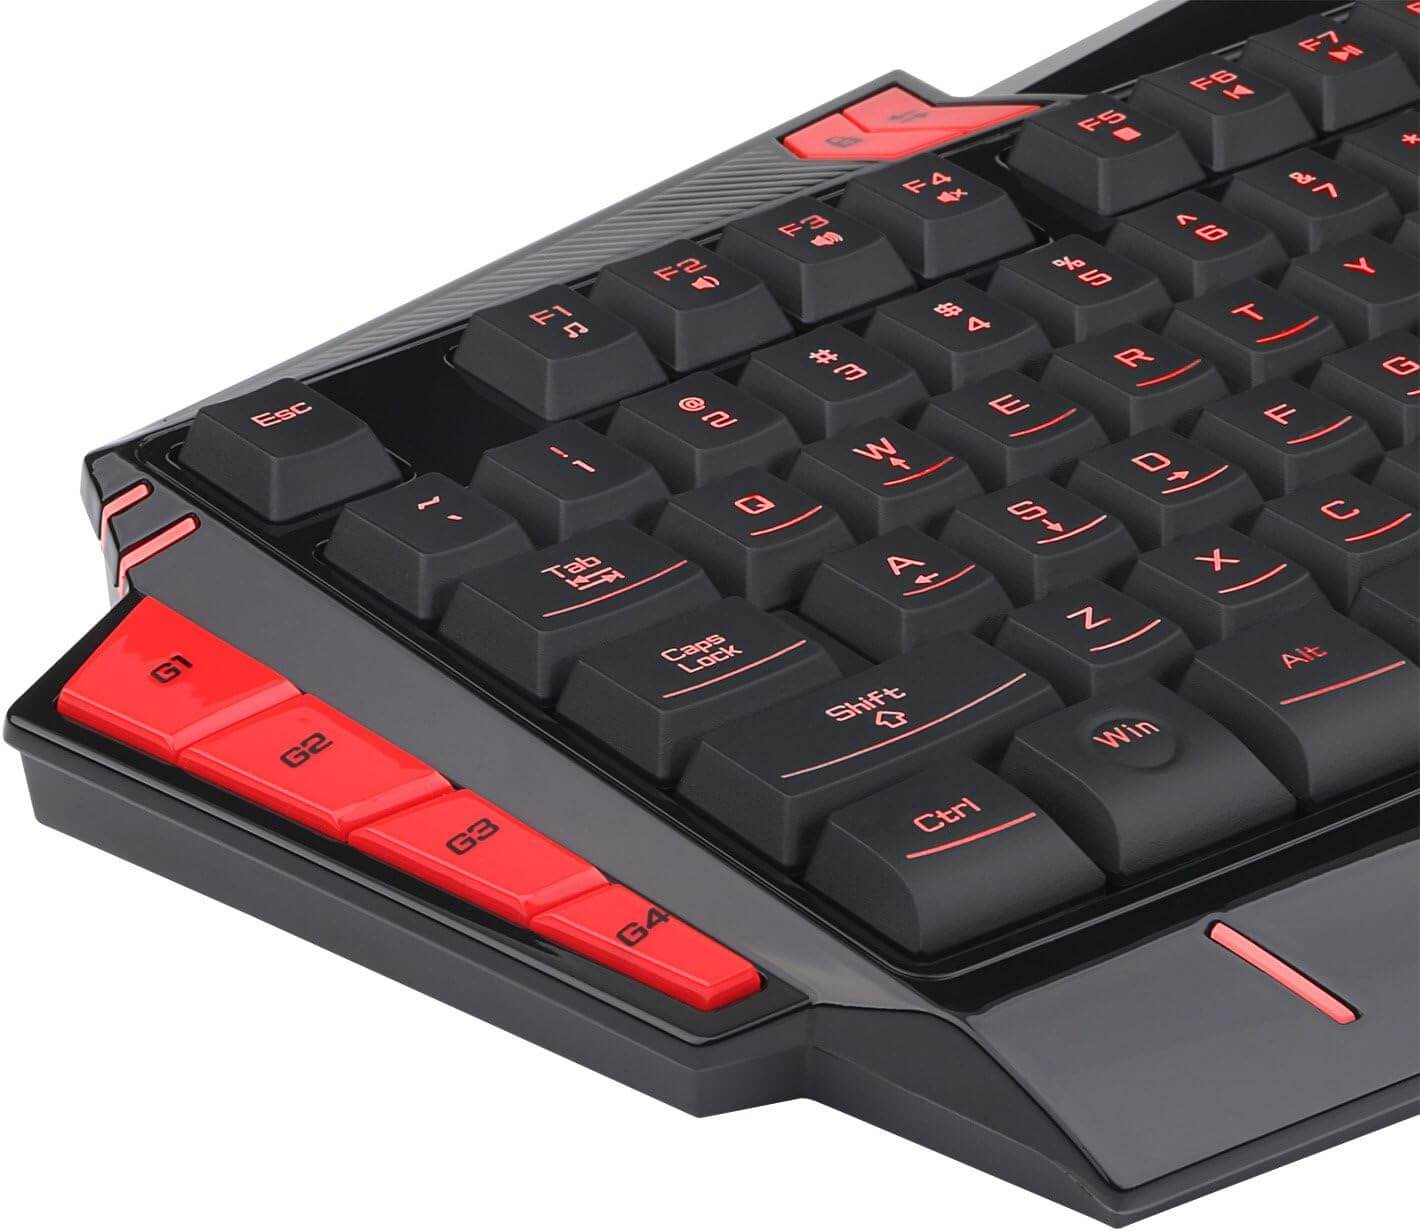 Redragon K501-2 Asura USB Gaming Keyboard, 7 Color Backlight Illumination, 116 Standard Keys, 8 Programmable Macro Keys